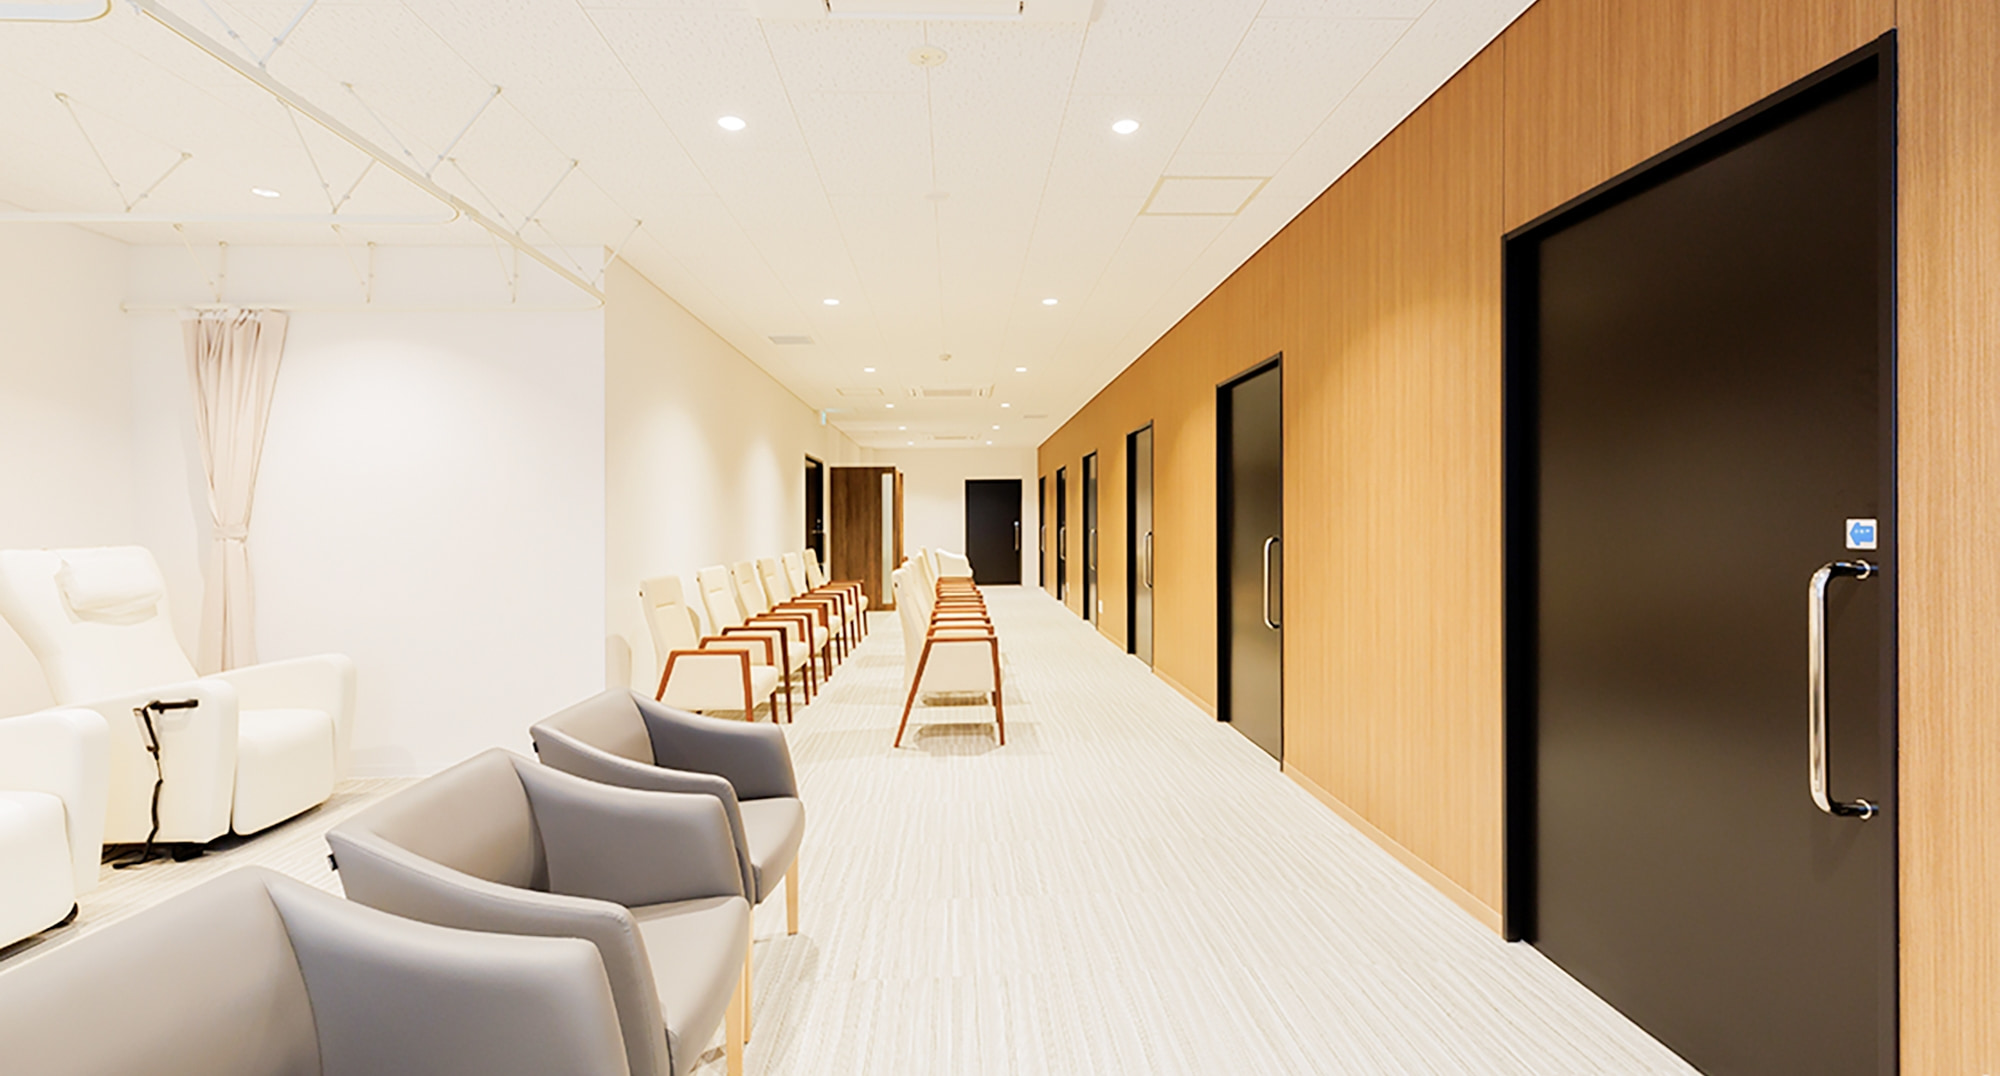 宮城県対がん協会の新センター待合室の写真